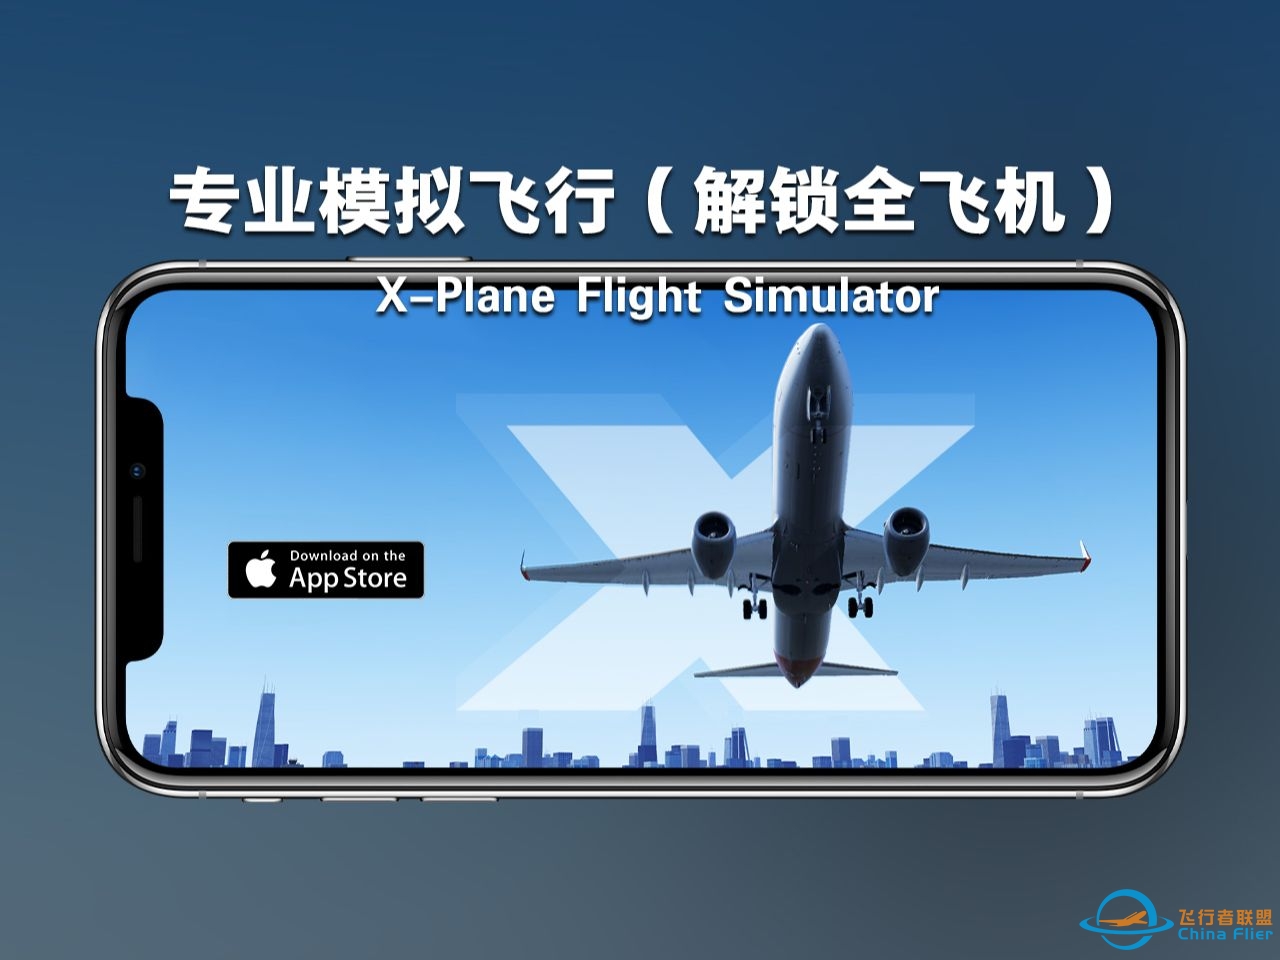 ios苹果端价值近70美刀的飞行模拟游戏 X-Plane Flight Simulator（解锁所有飞机）-7978 